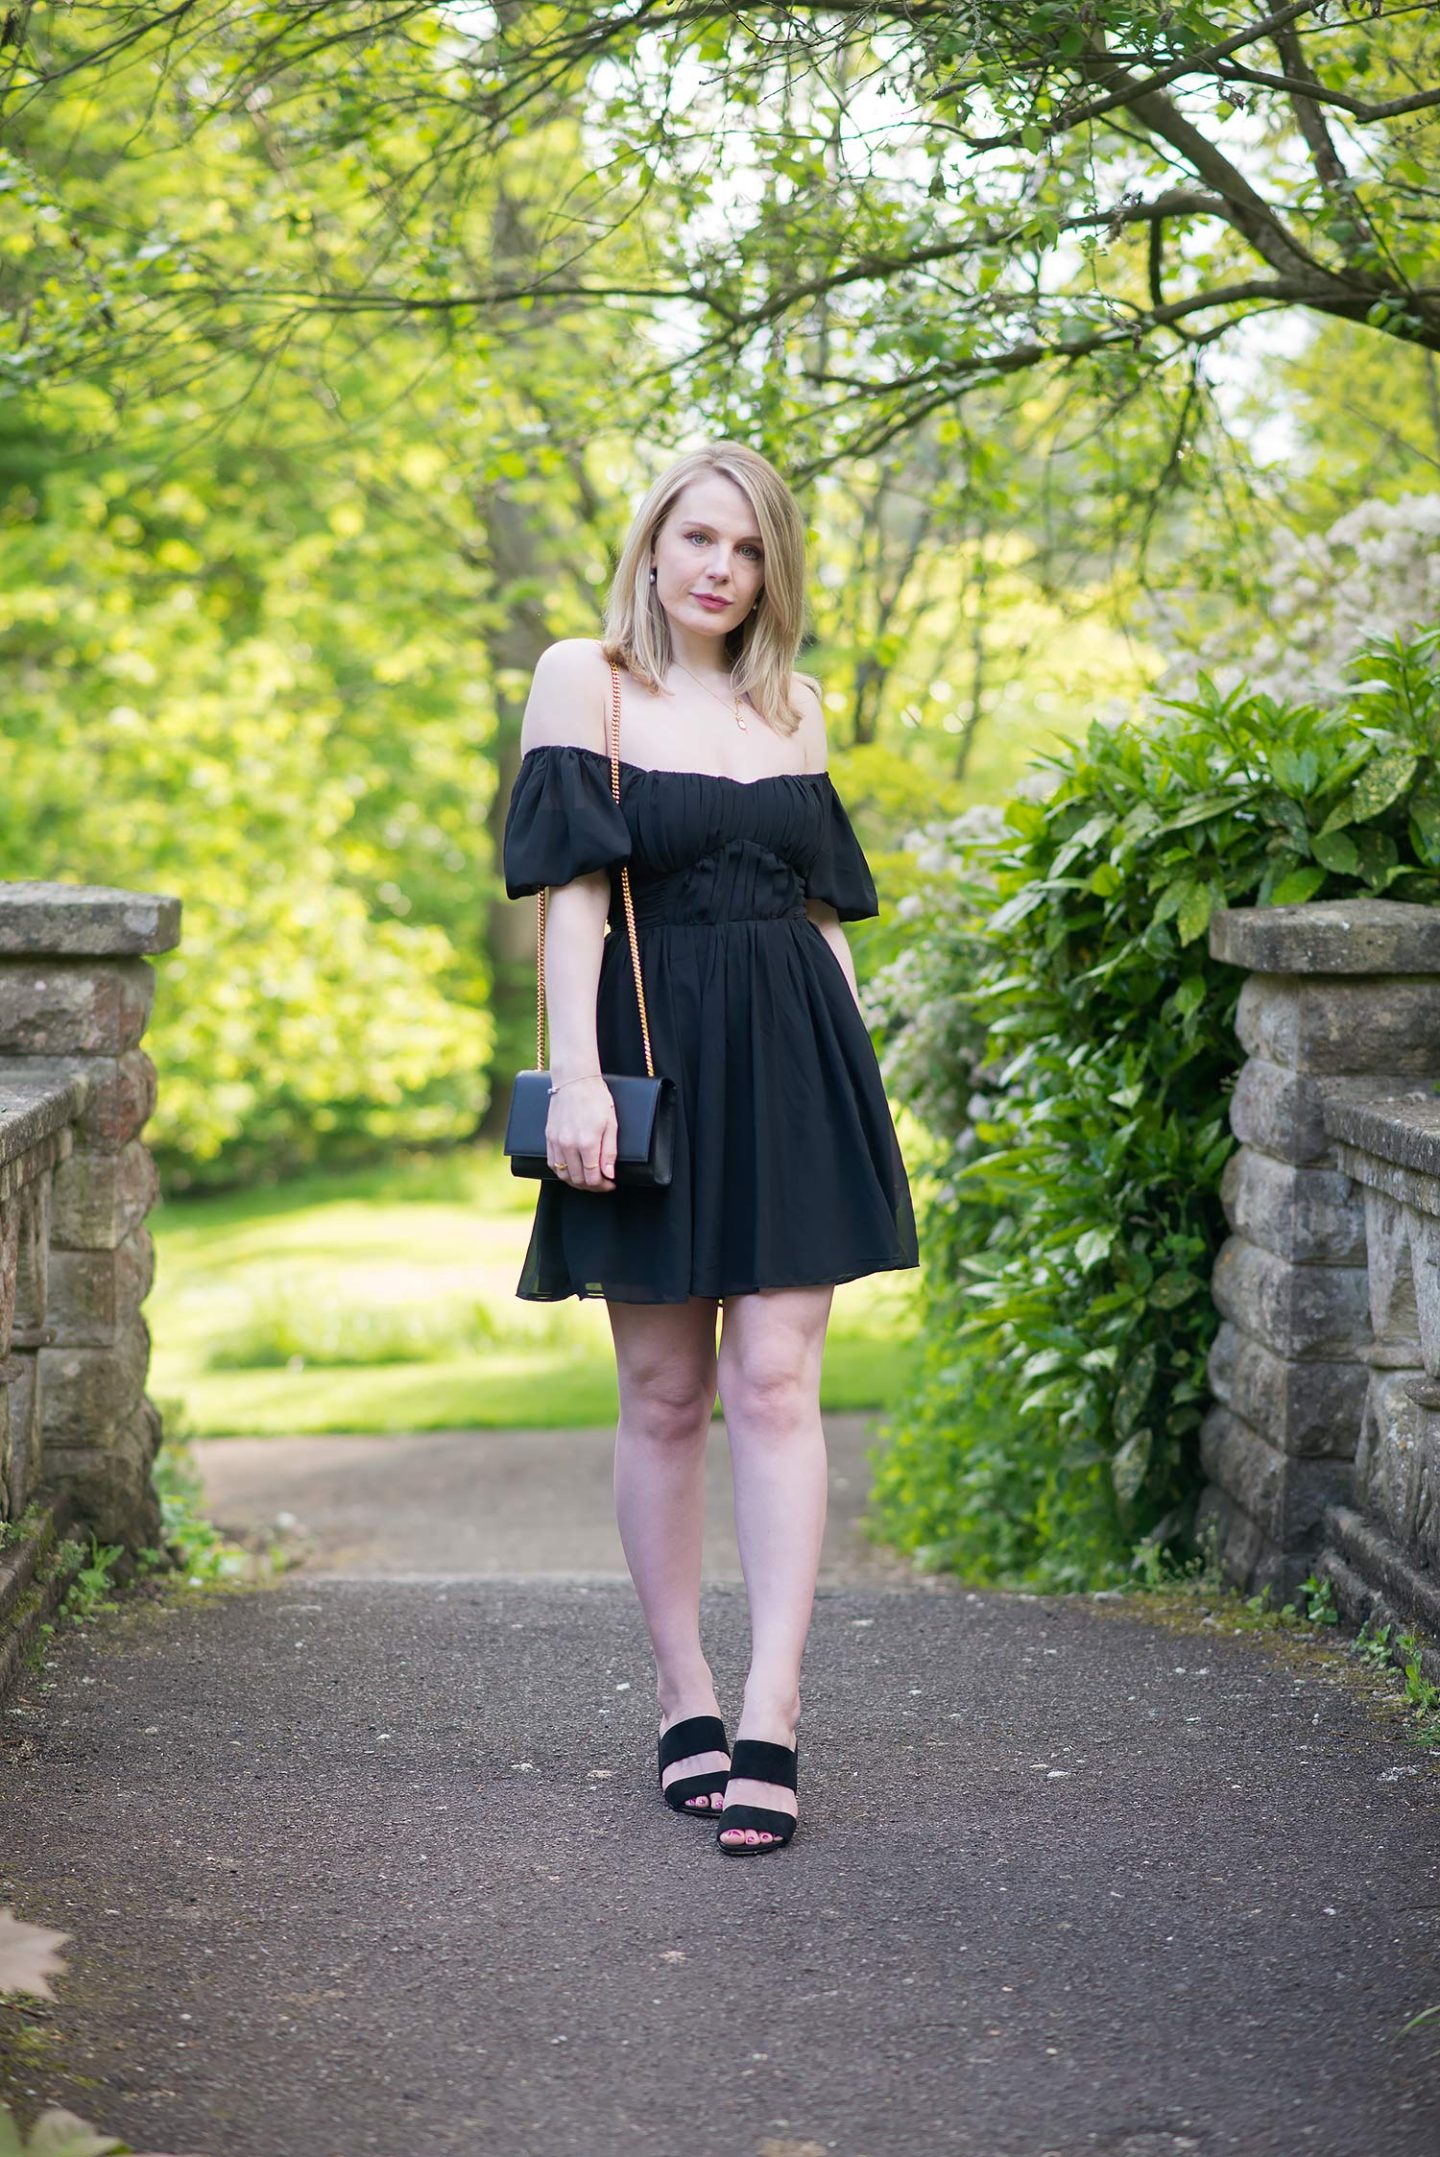 Black Off The Shoulder Dress With YSL Kate – FORD LA FEMME